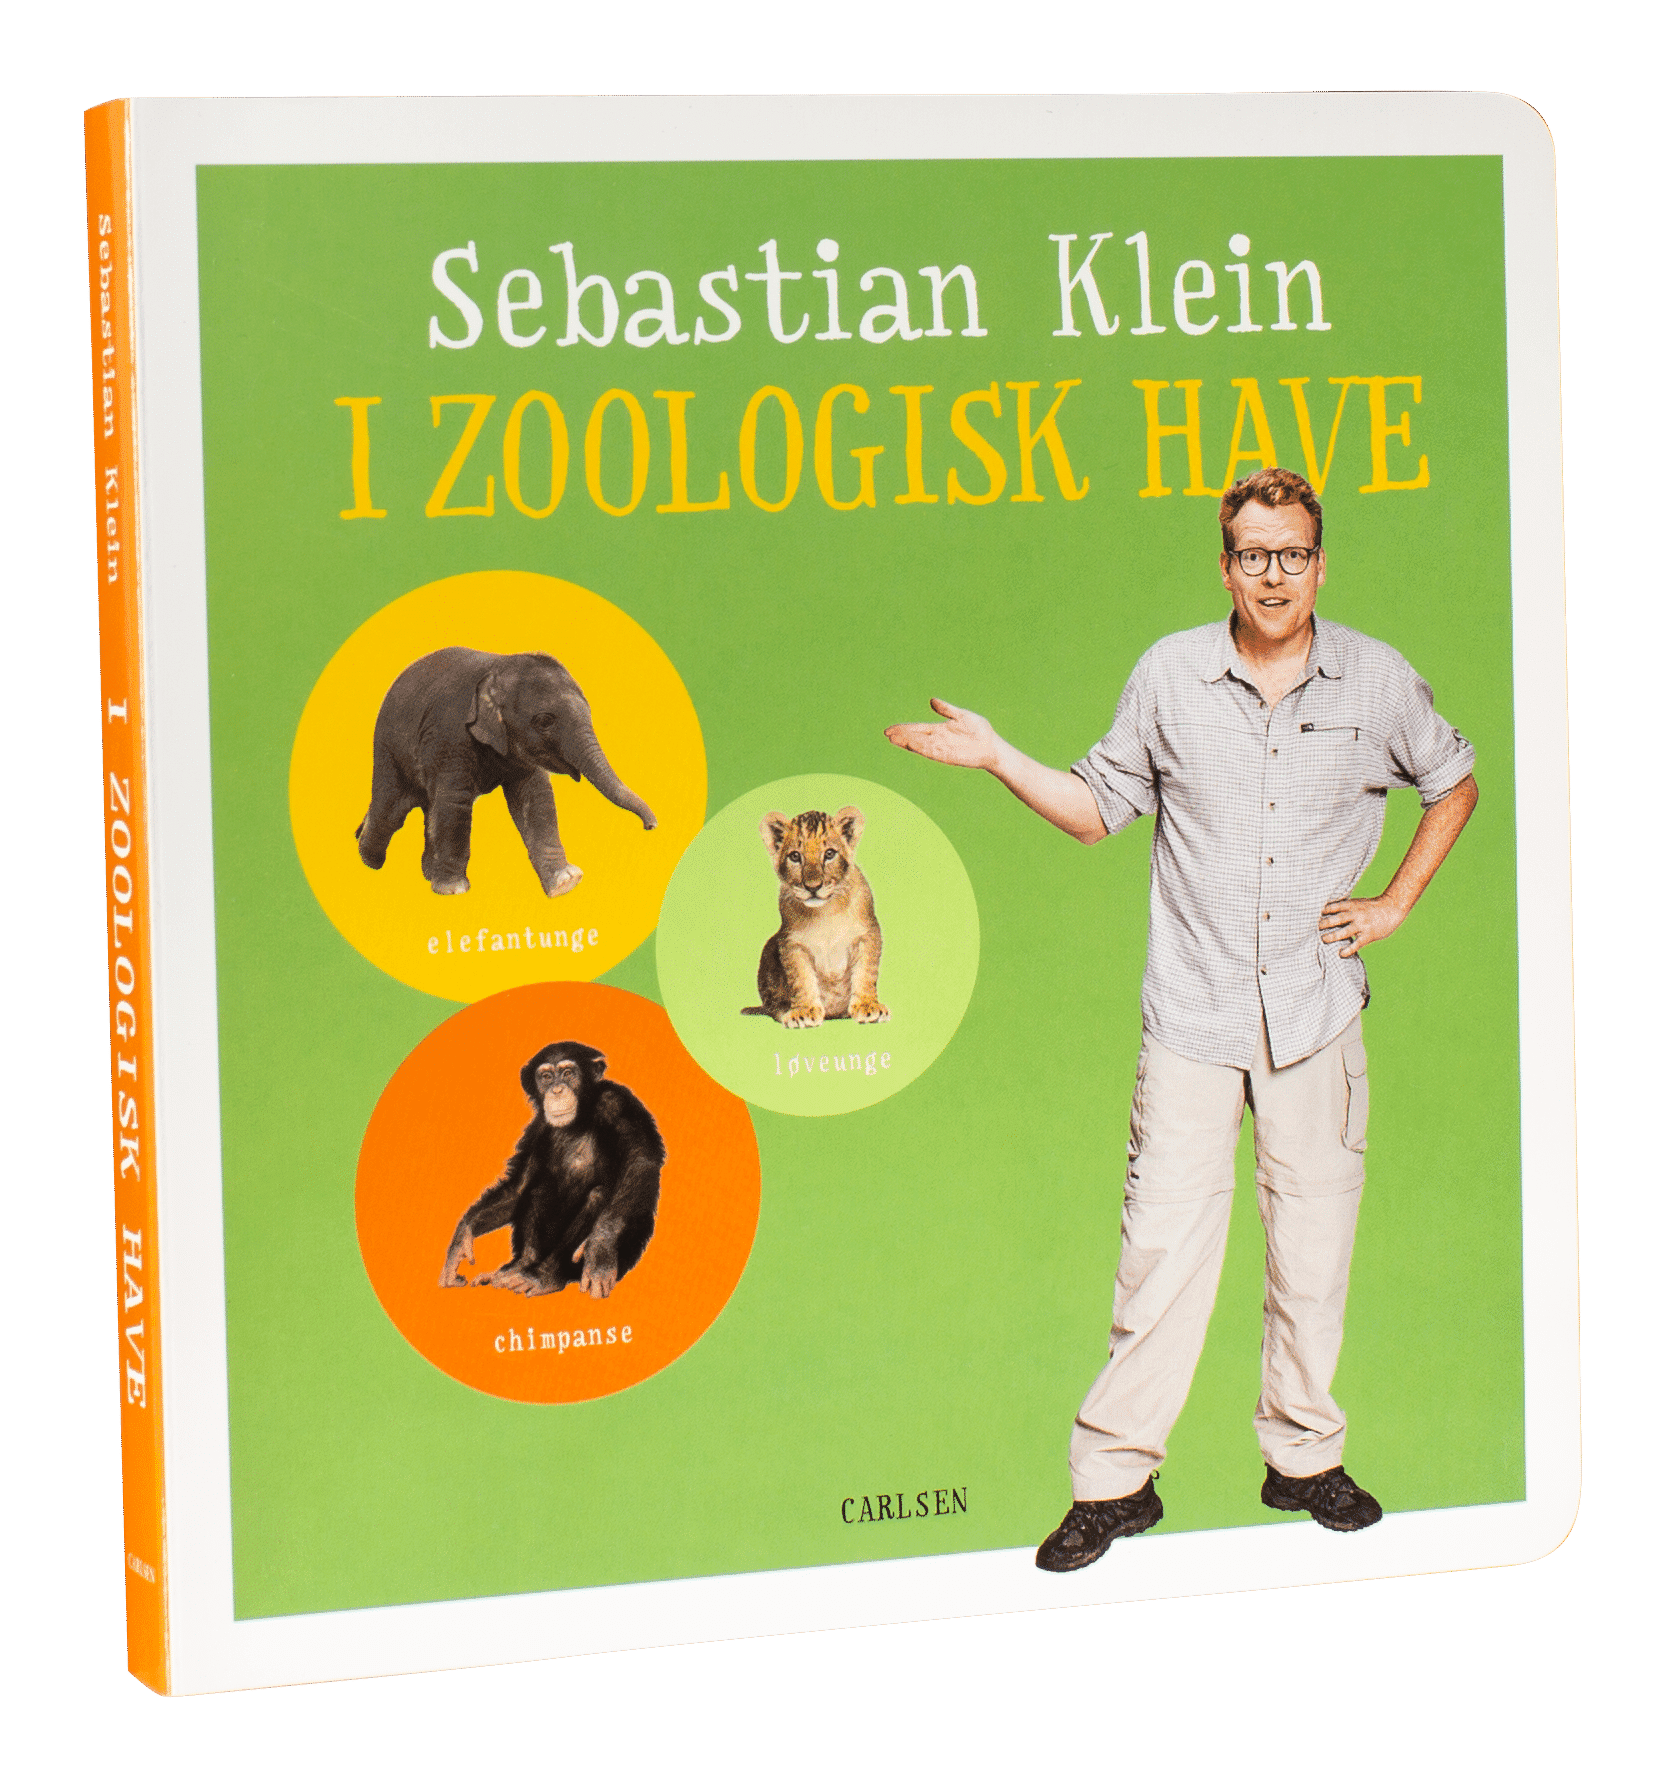 Sebastian Klein, Sebastian Klein I zoologisk have, børnebog, børnebøger, papbog, papbøger, bøger til de mindste, dyrebog, bog om dyr